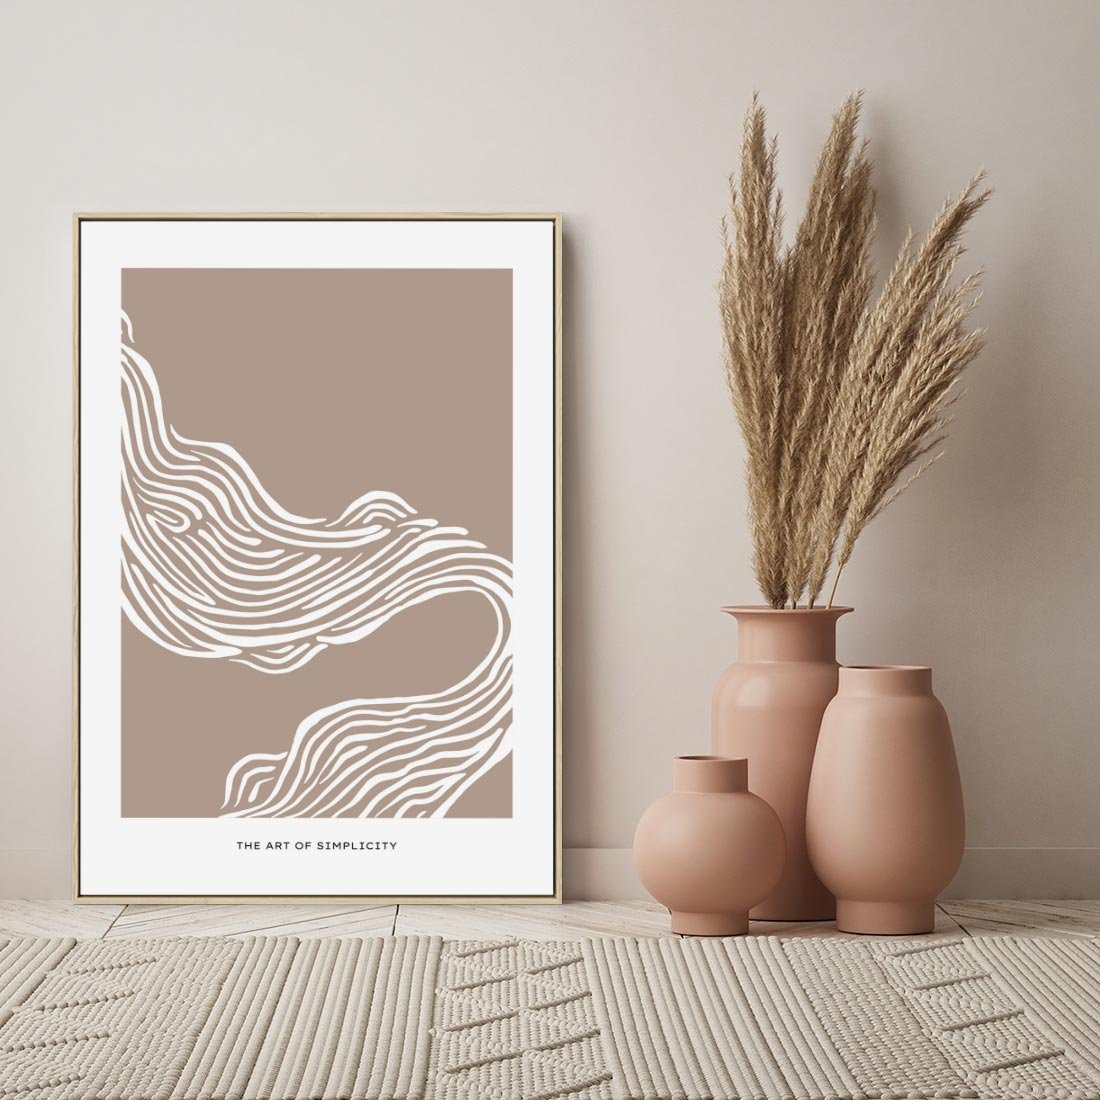 Obraz w ramie 50x70 - Harmonijne Granice - sztuka minimalizmu, biała rycina - rama drewno